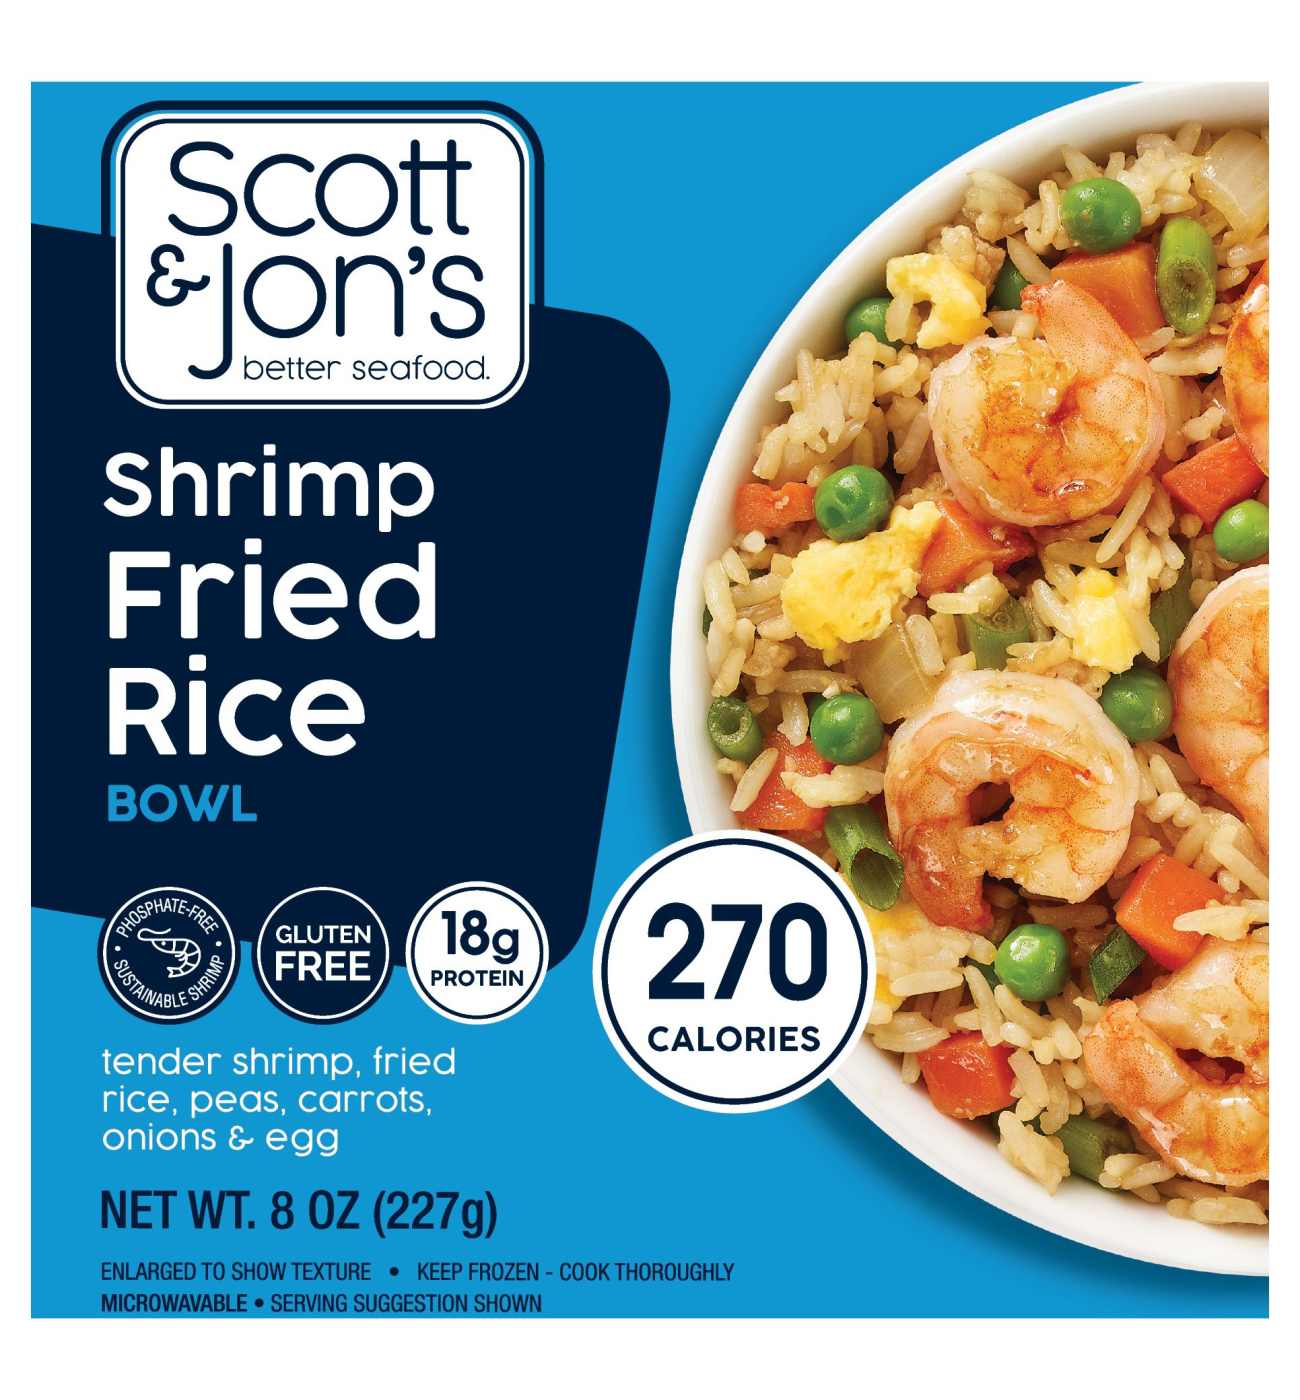 Scott & Jon's Shrimp Fried Rice Bowl; image 1 of 2